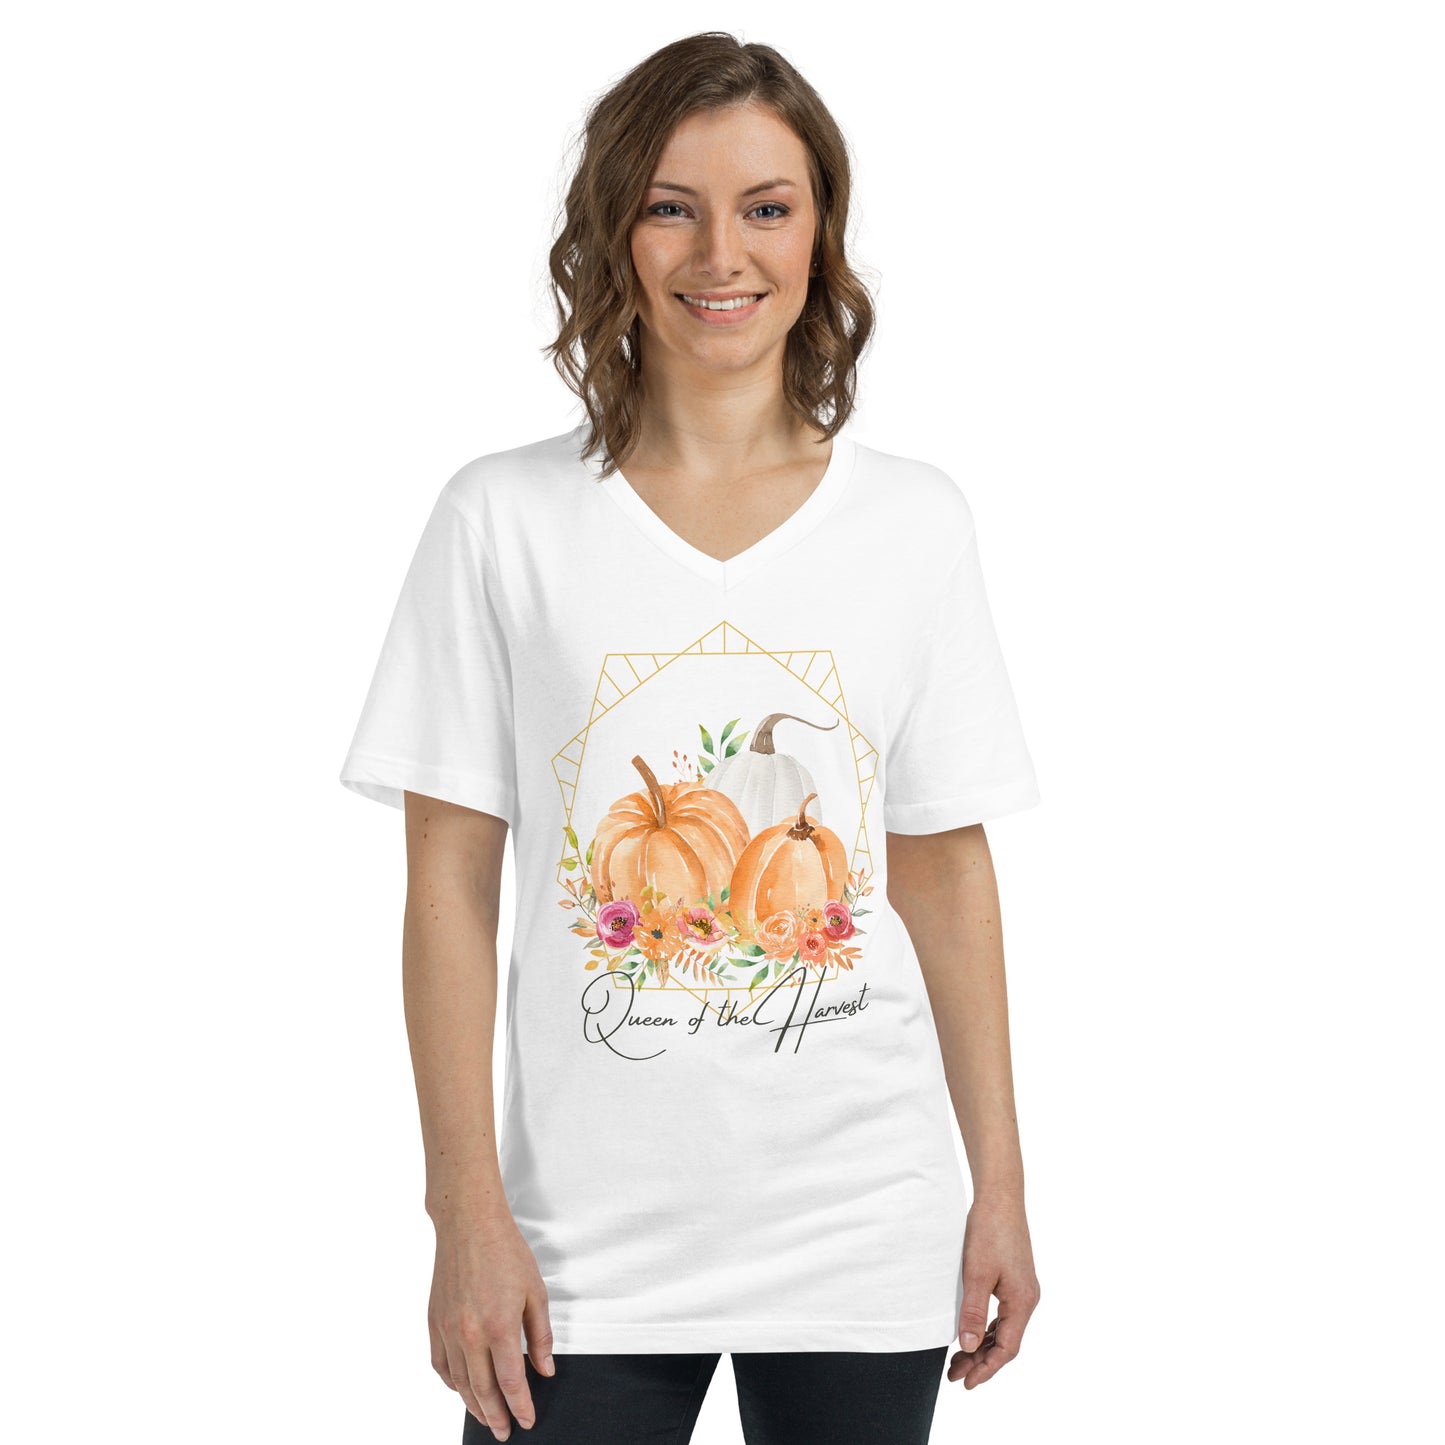 Queen of the Harvest | Unisex V-Neck T-Shirt